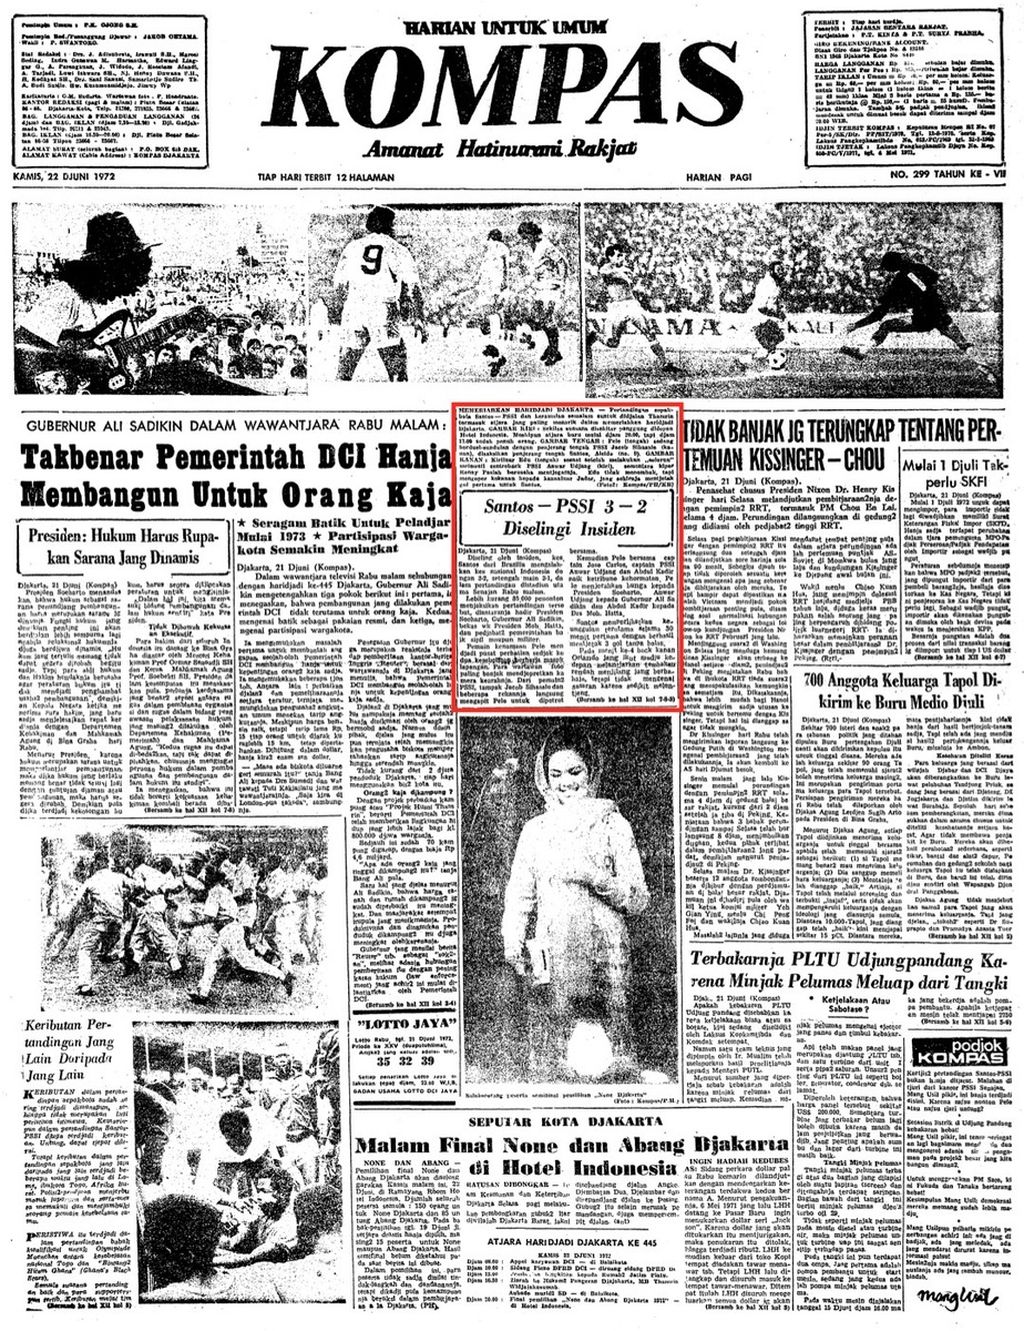 Halaman muka "Kompas" edisi, Kamis, 22 Juni 1972, yang memuat tentang hasil laga tim PSSI menghadapi Santos di Stadion Utama Senayan, Jakarta, 21 Juni 1972.